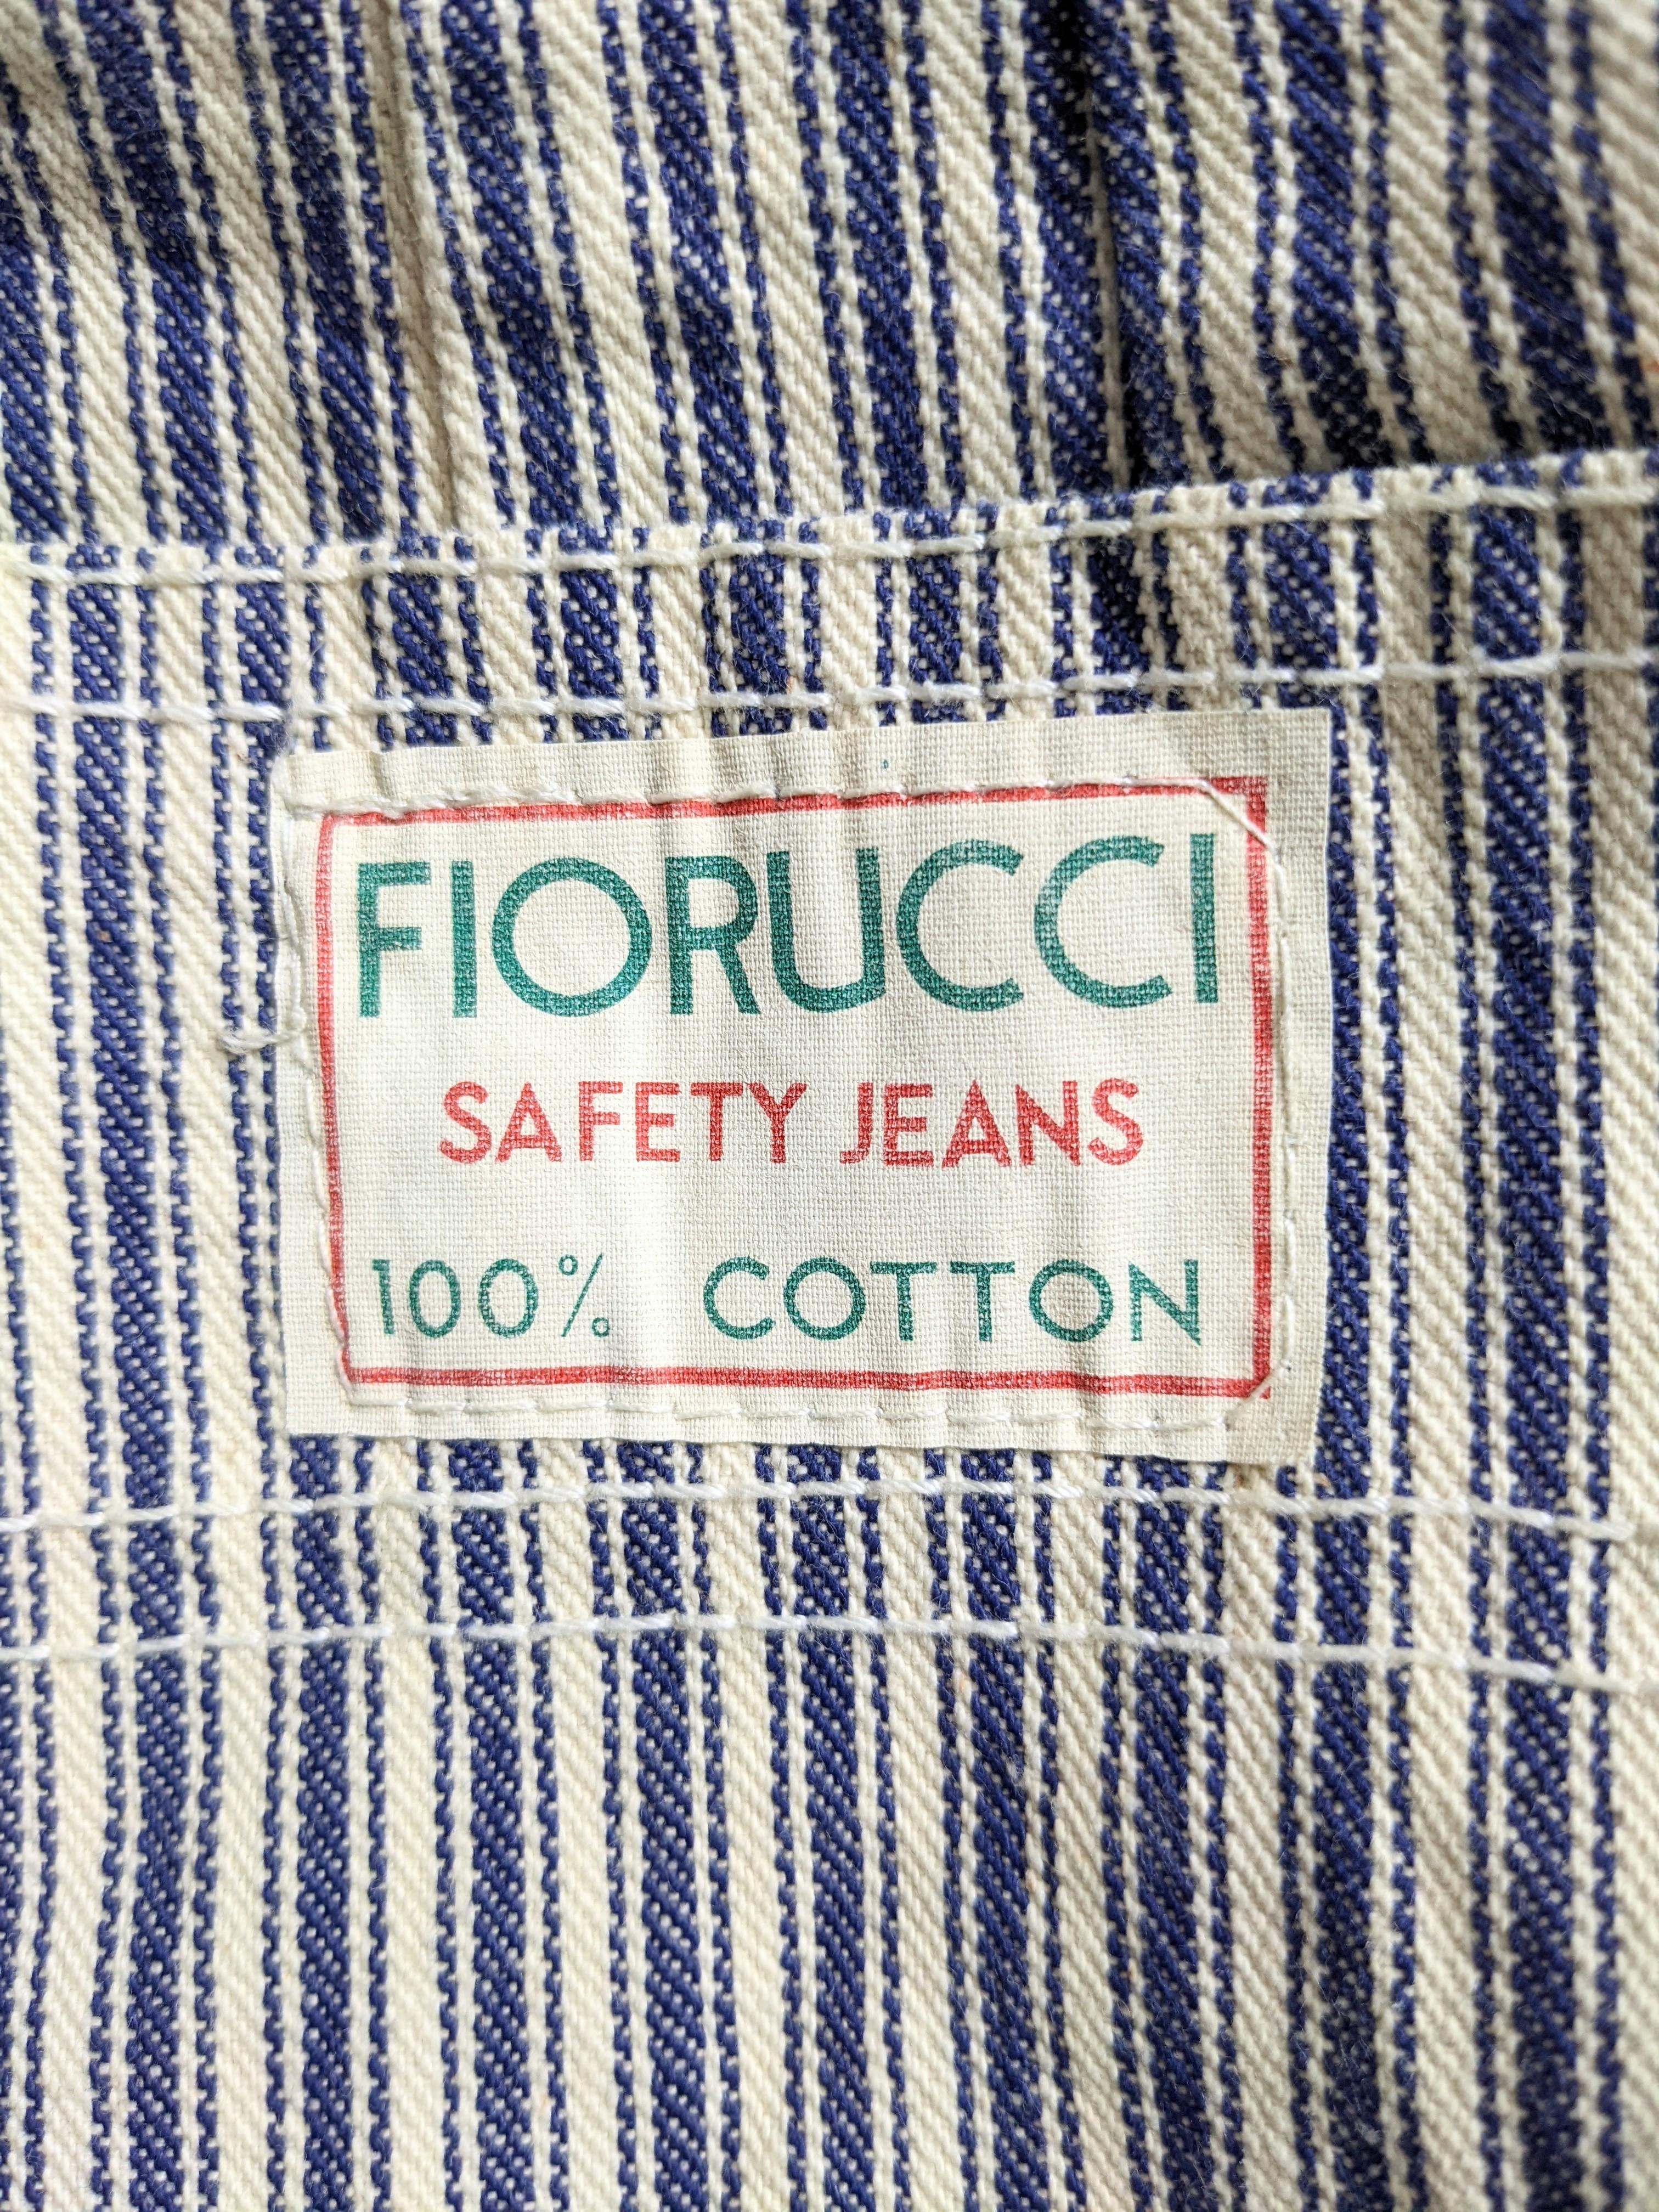 Fiorucci Denim Striped Overall Dress For Sale 1